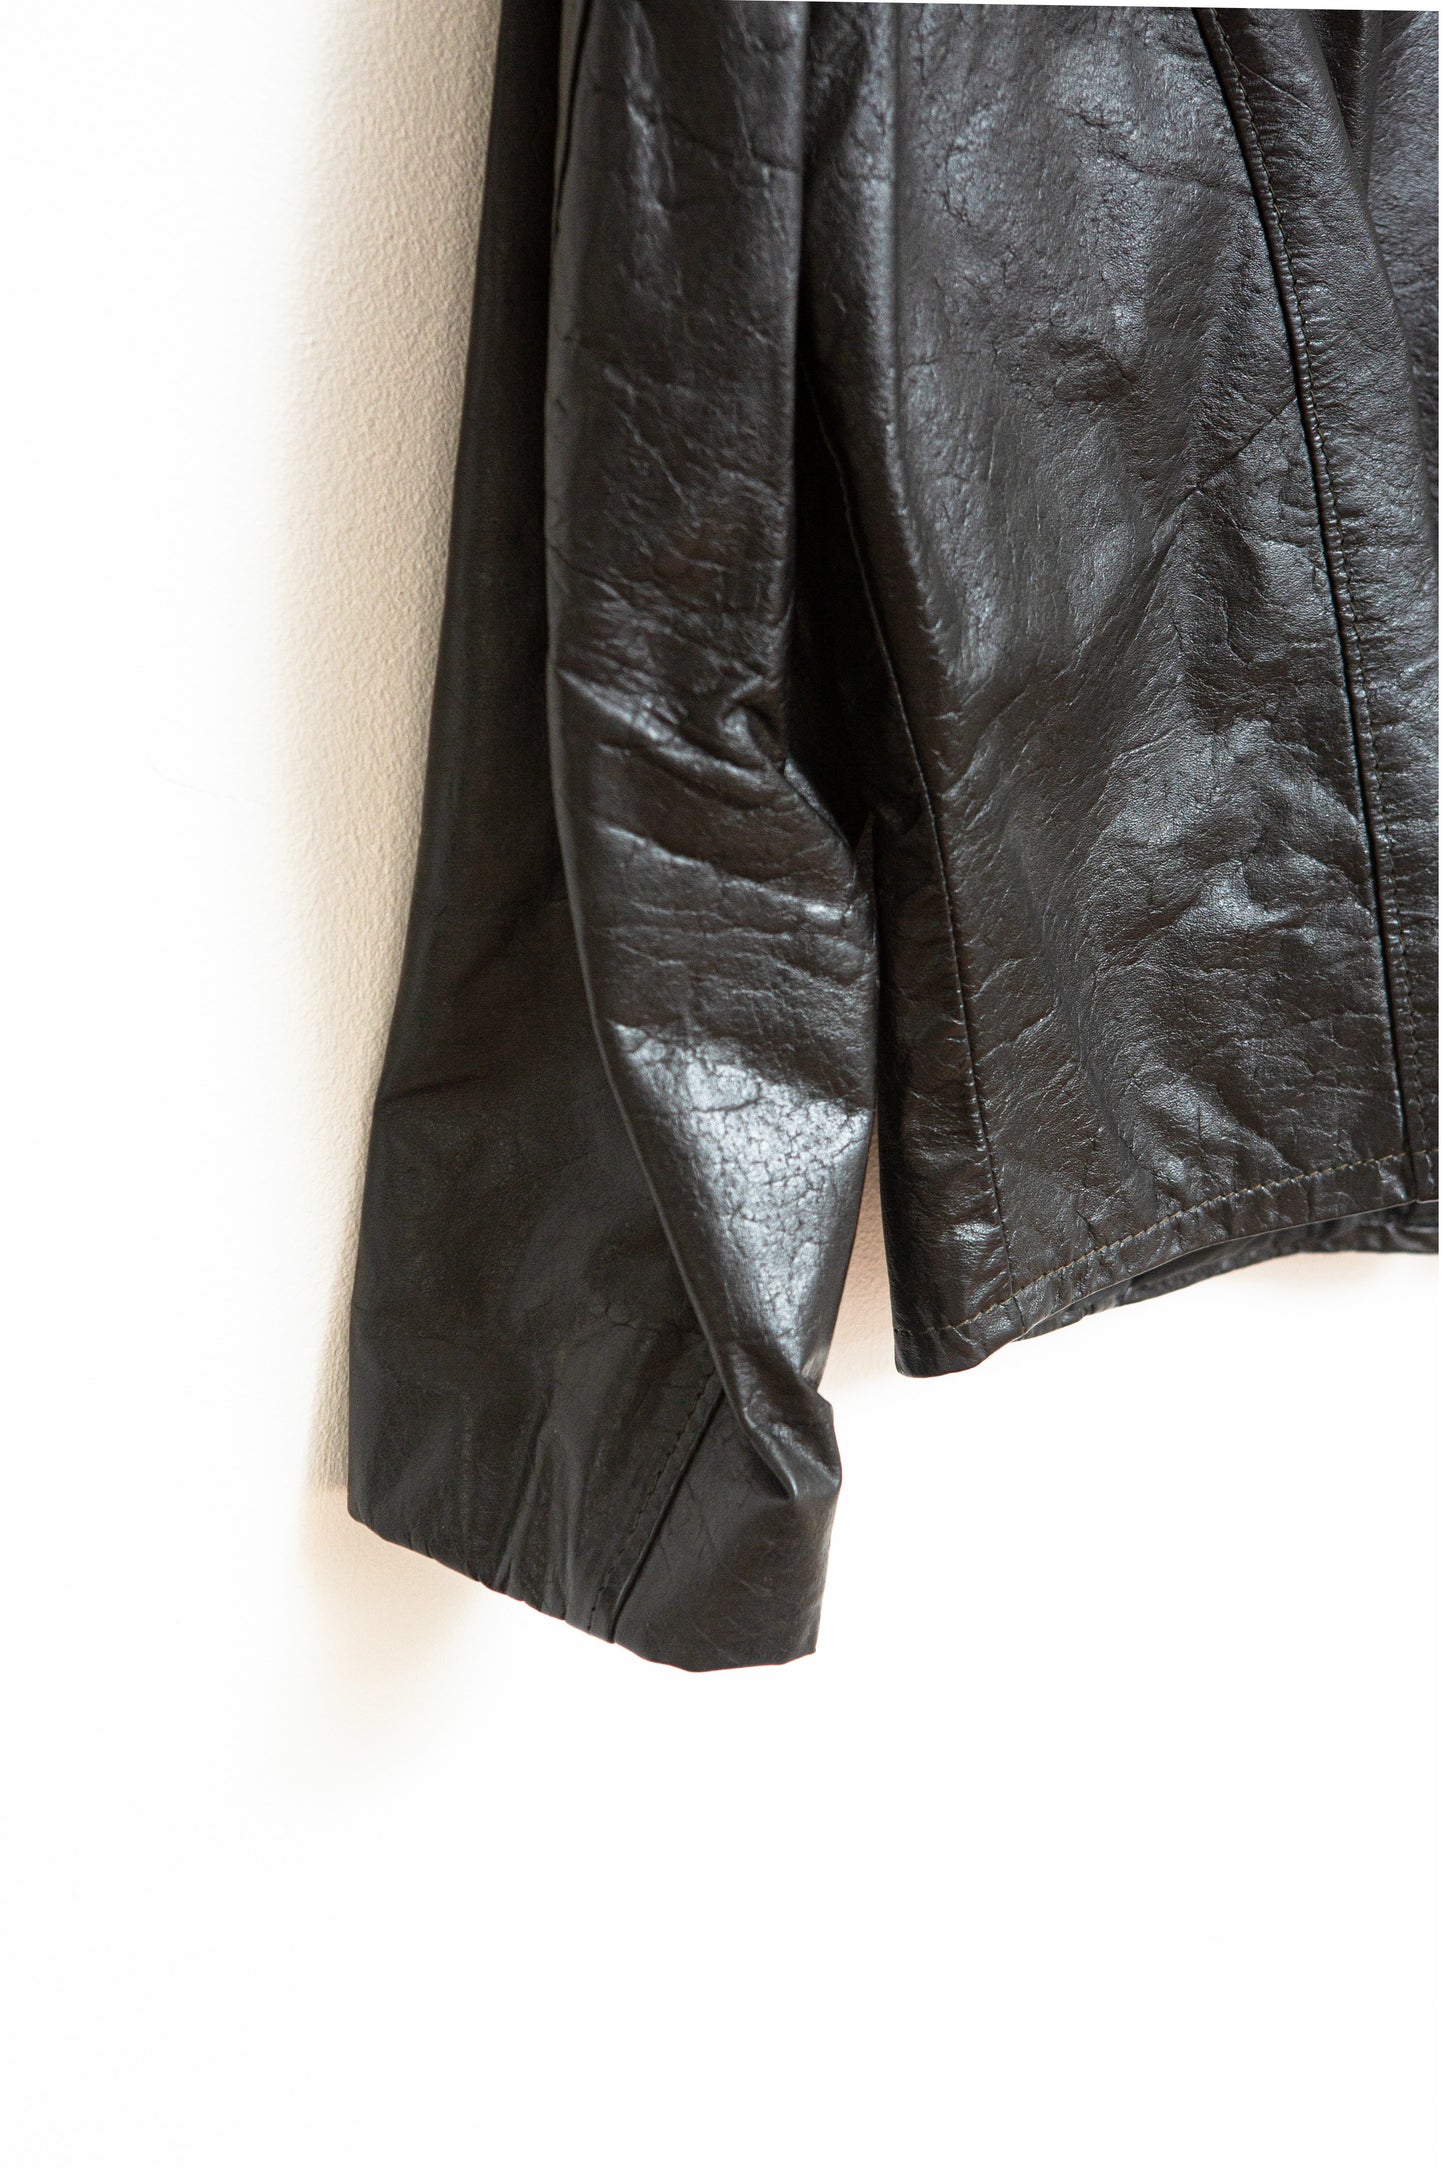 1980's Black Jean Pierre leather jacket